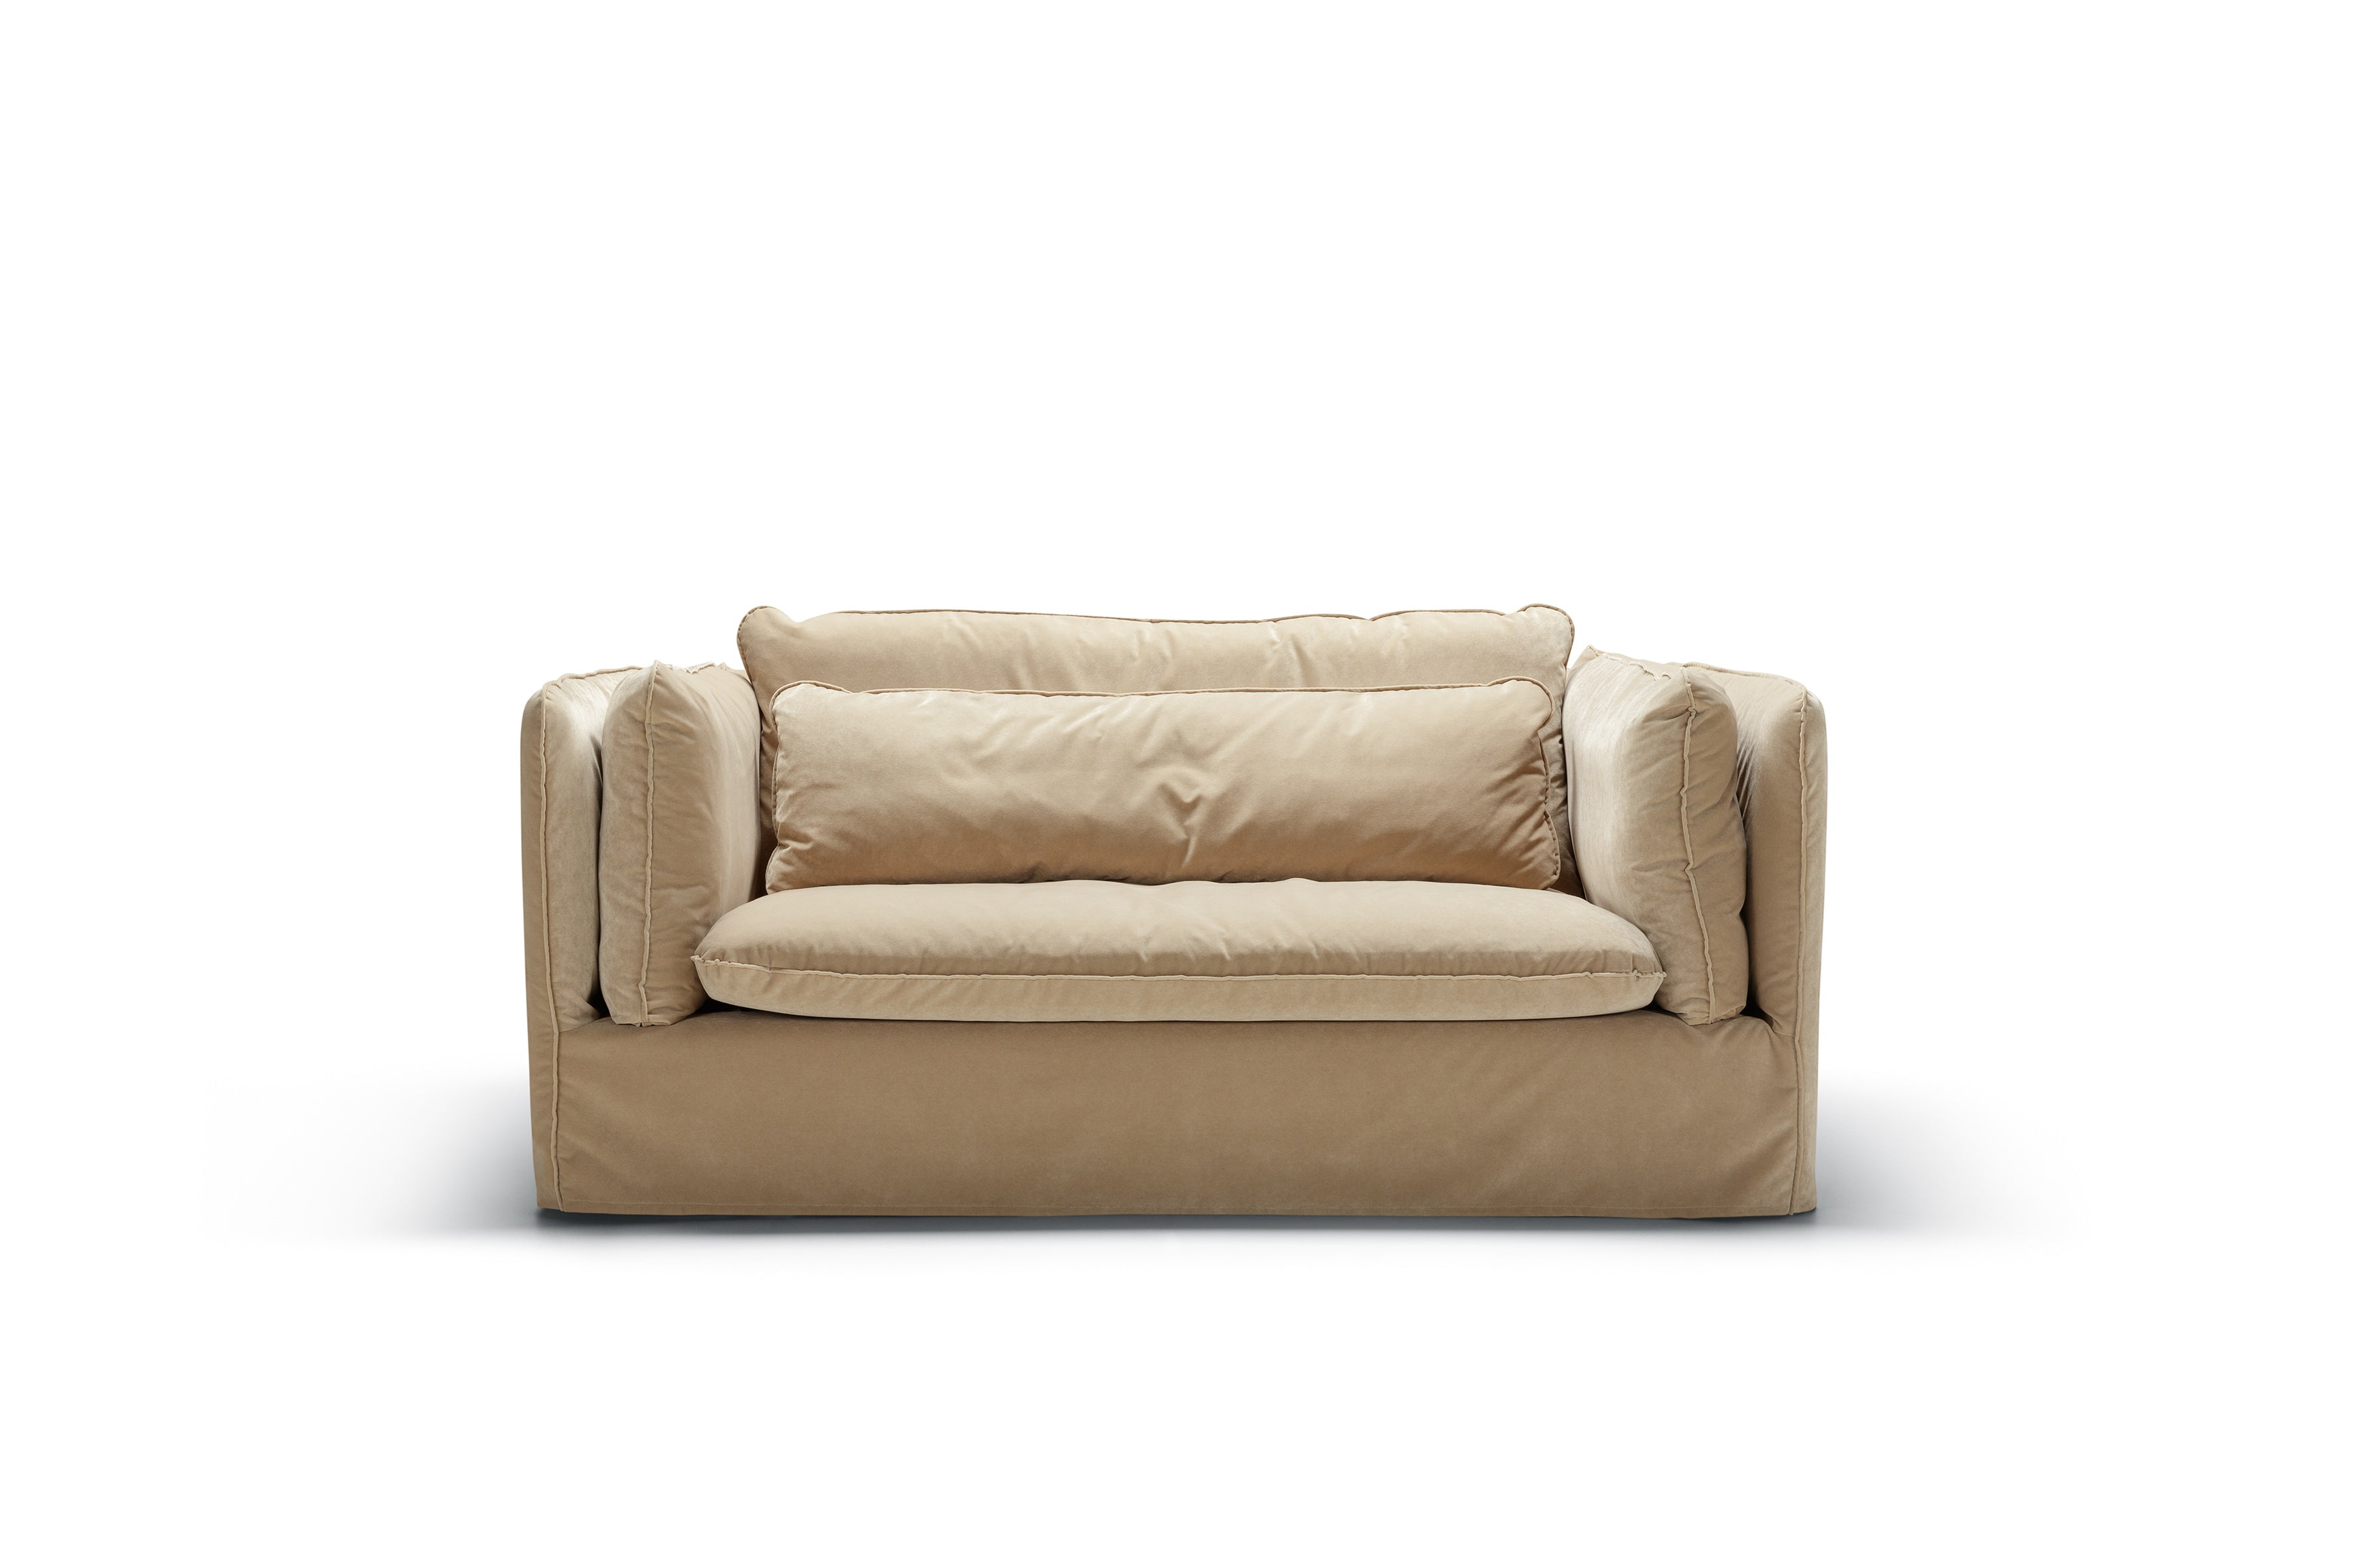 Mastrella Vero 2 Seater Sofa